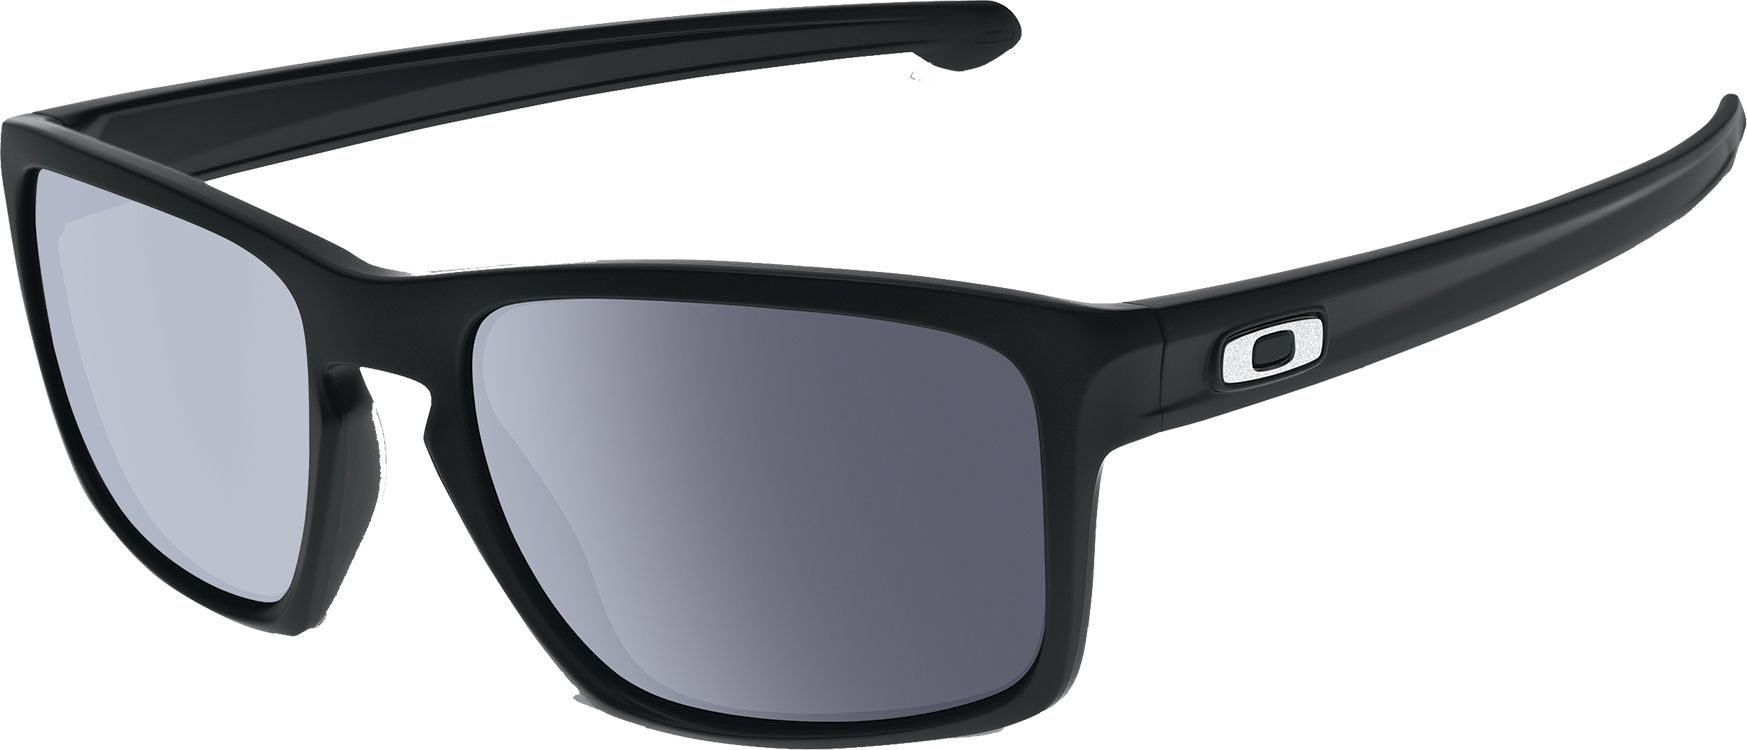 Oakley Men's Sliver Sunglasses | DICK'S Sporting Goods